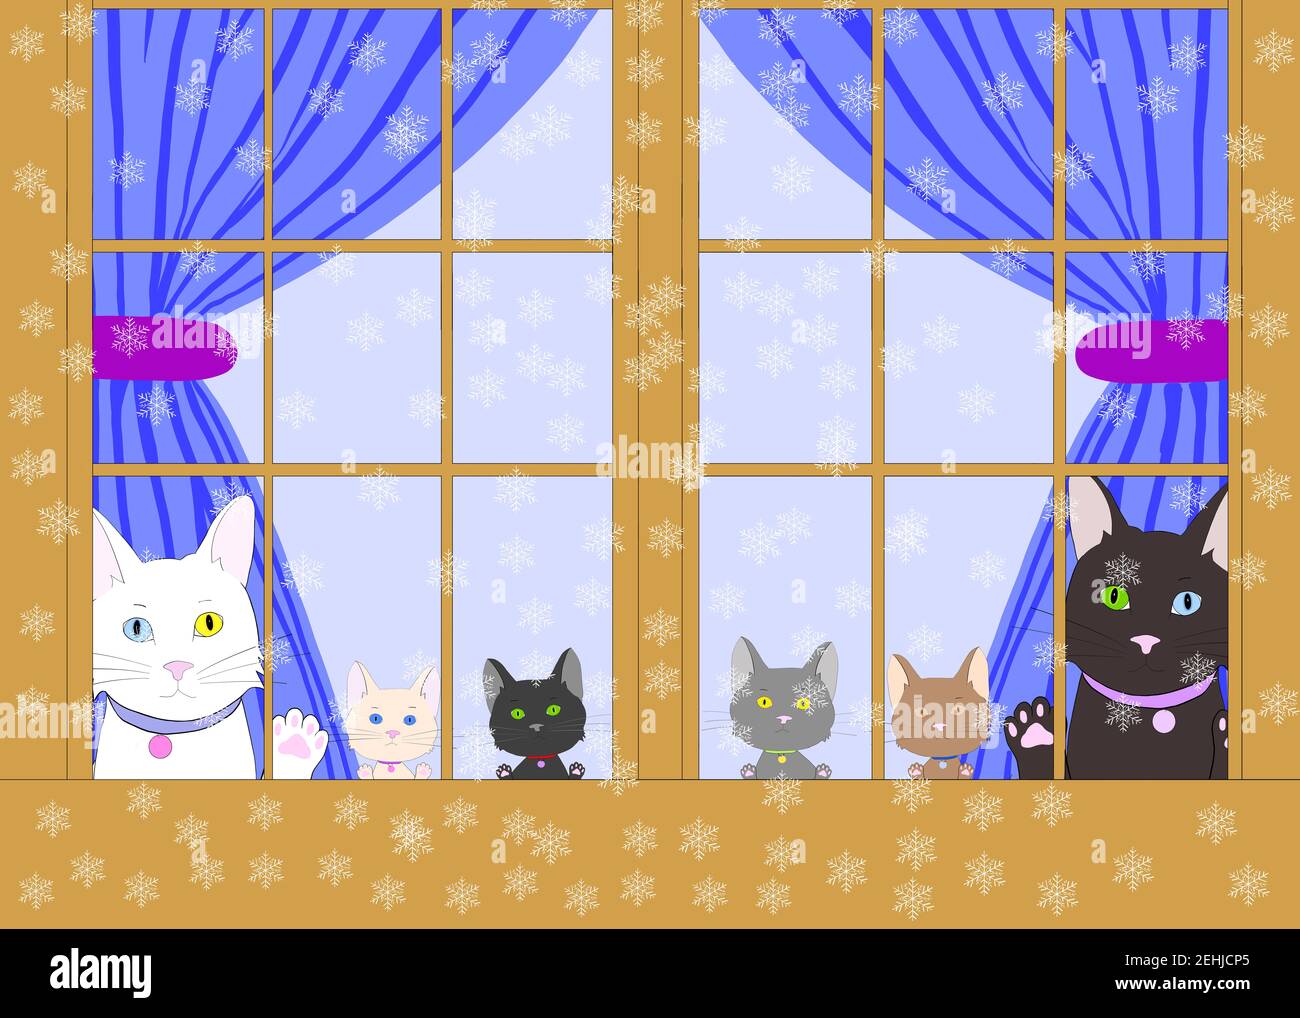 Dessin d'illustration de deux chats de dessin animé avec l'hétérochromie et quatre chatons divers peaking dehors à travers une fenêtre en bois brun avec des pattes sur le verre. E Banque D'Images